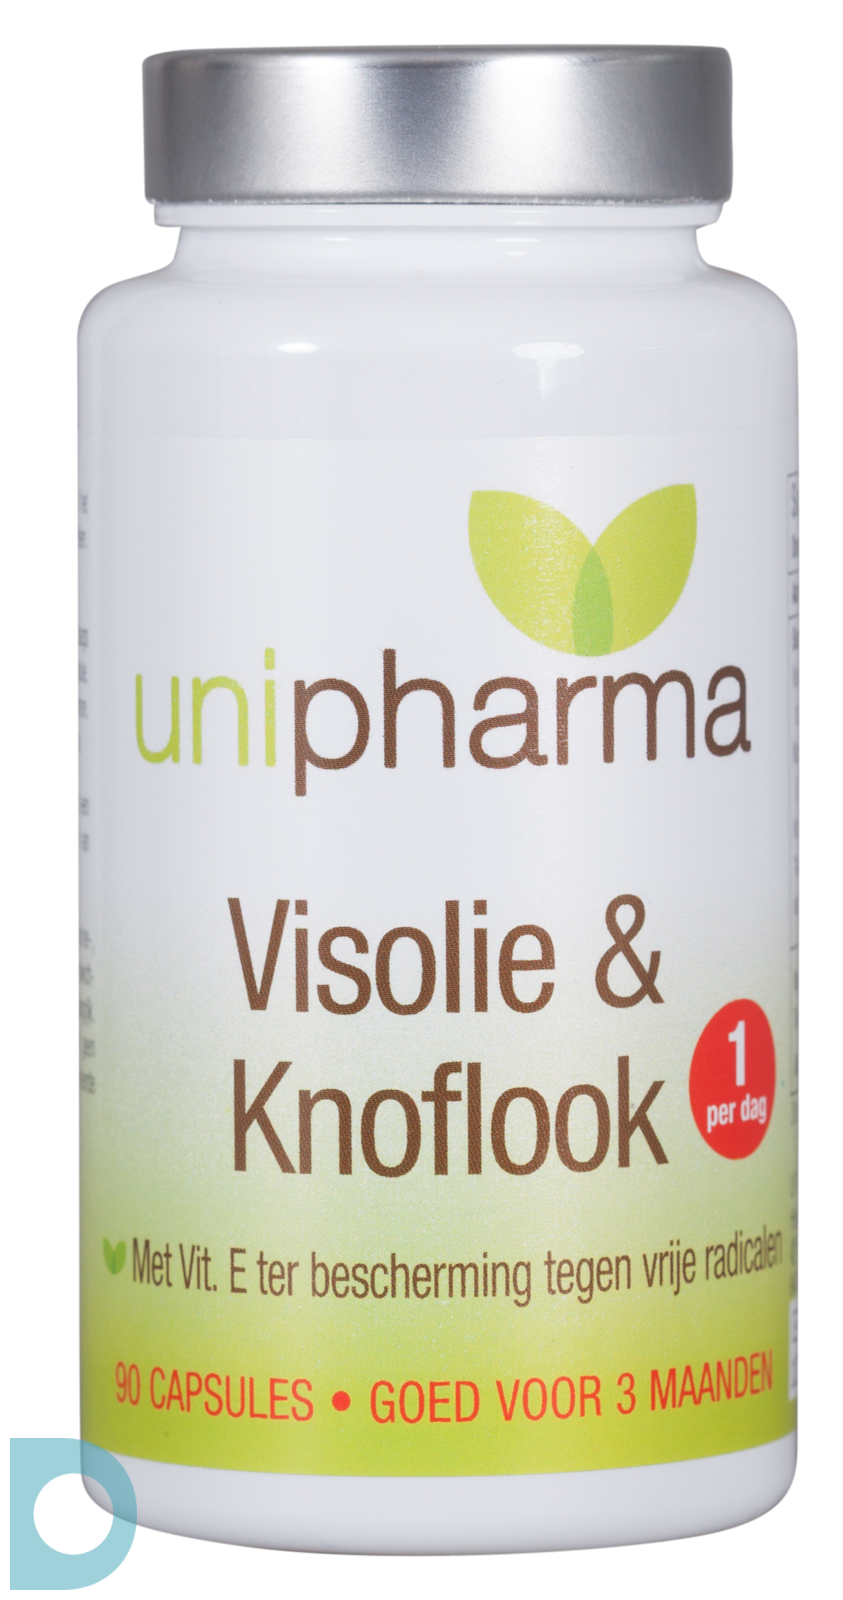 Gewaad Rationalisatie Additief Unipharma Visolie & Knoflook kopen bij De Online Drogist.